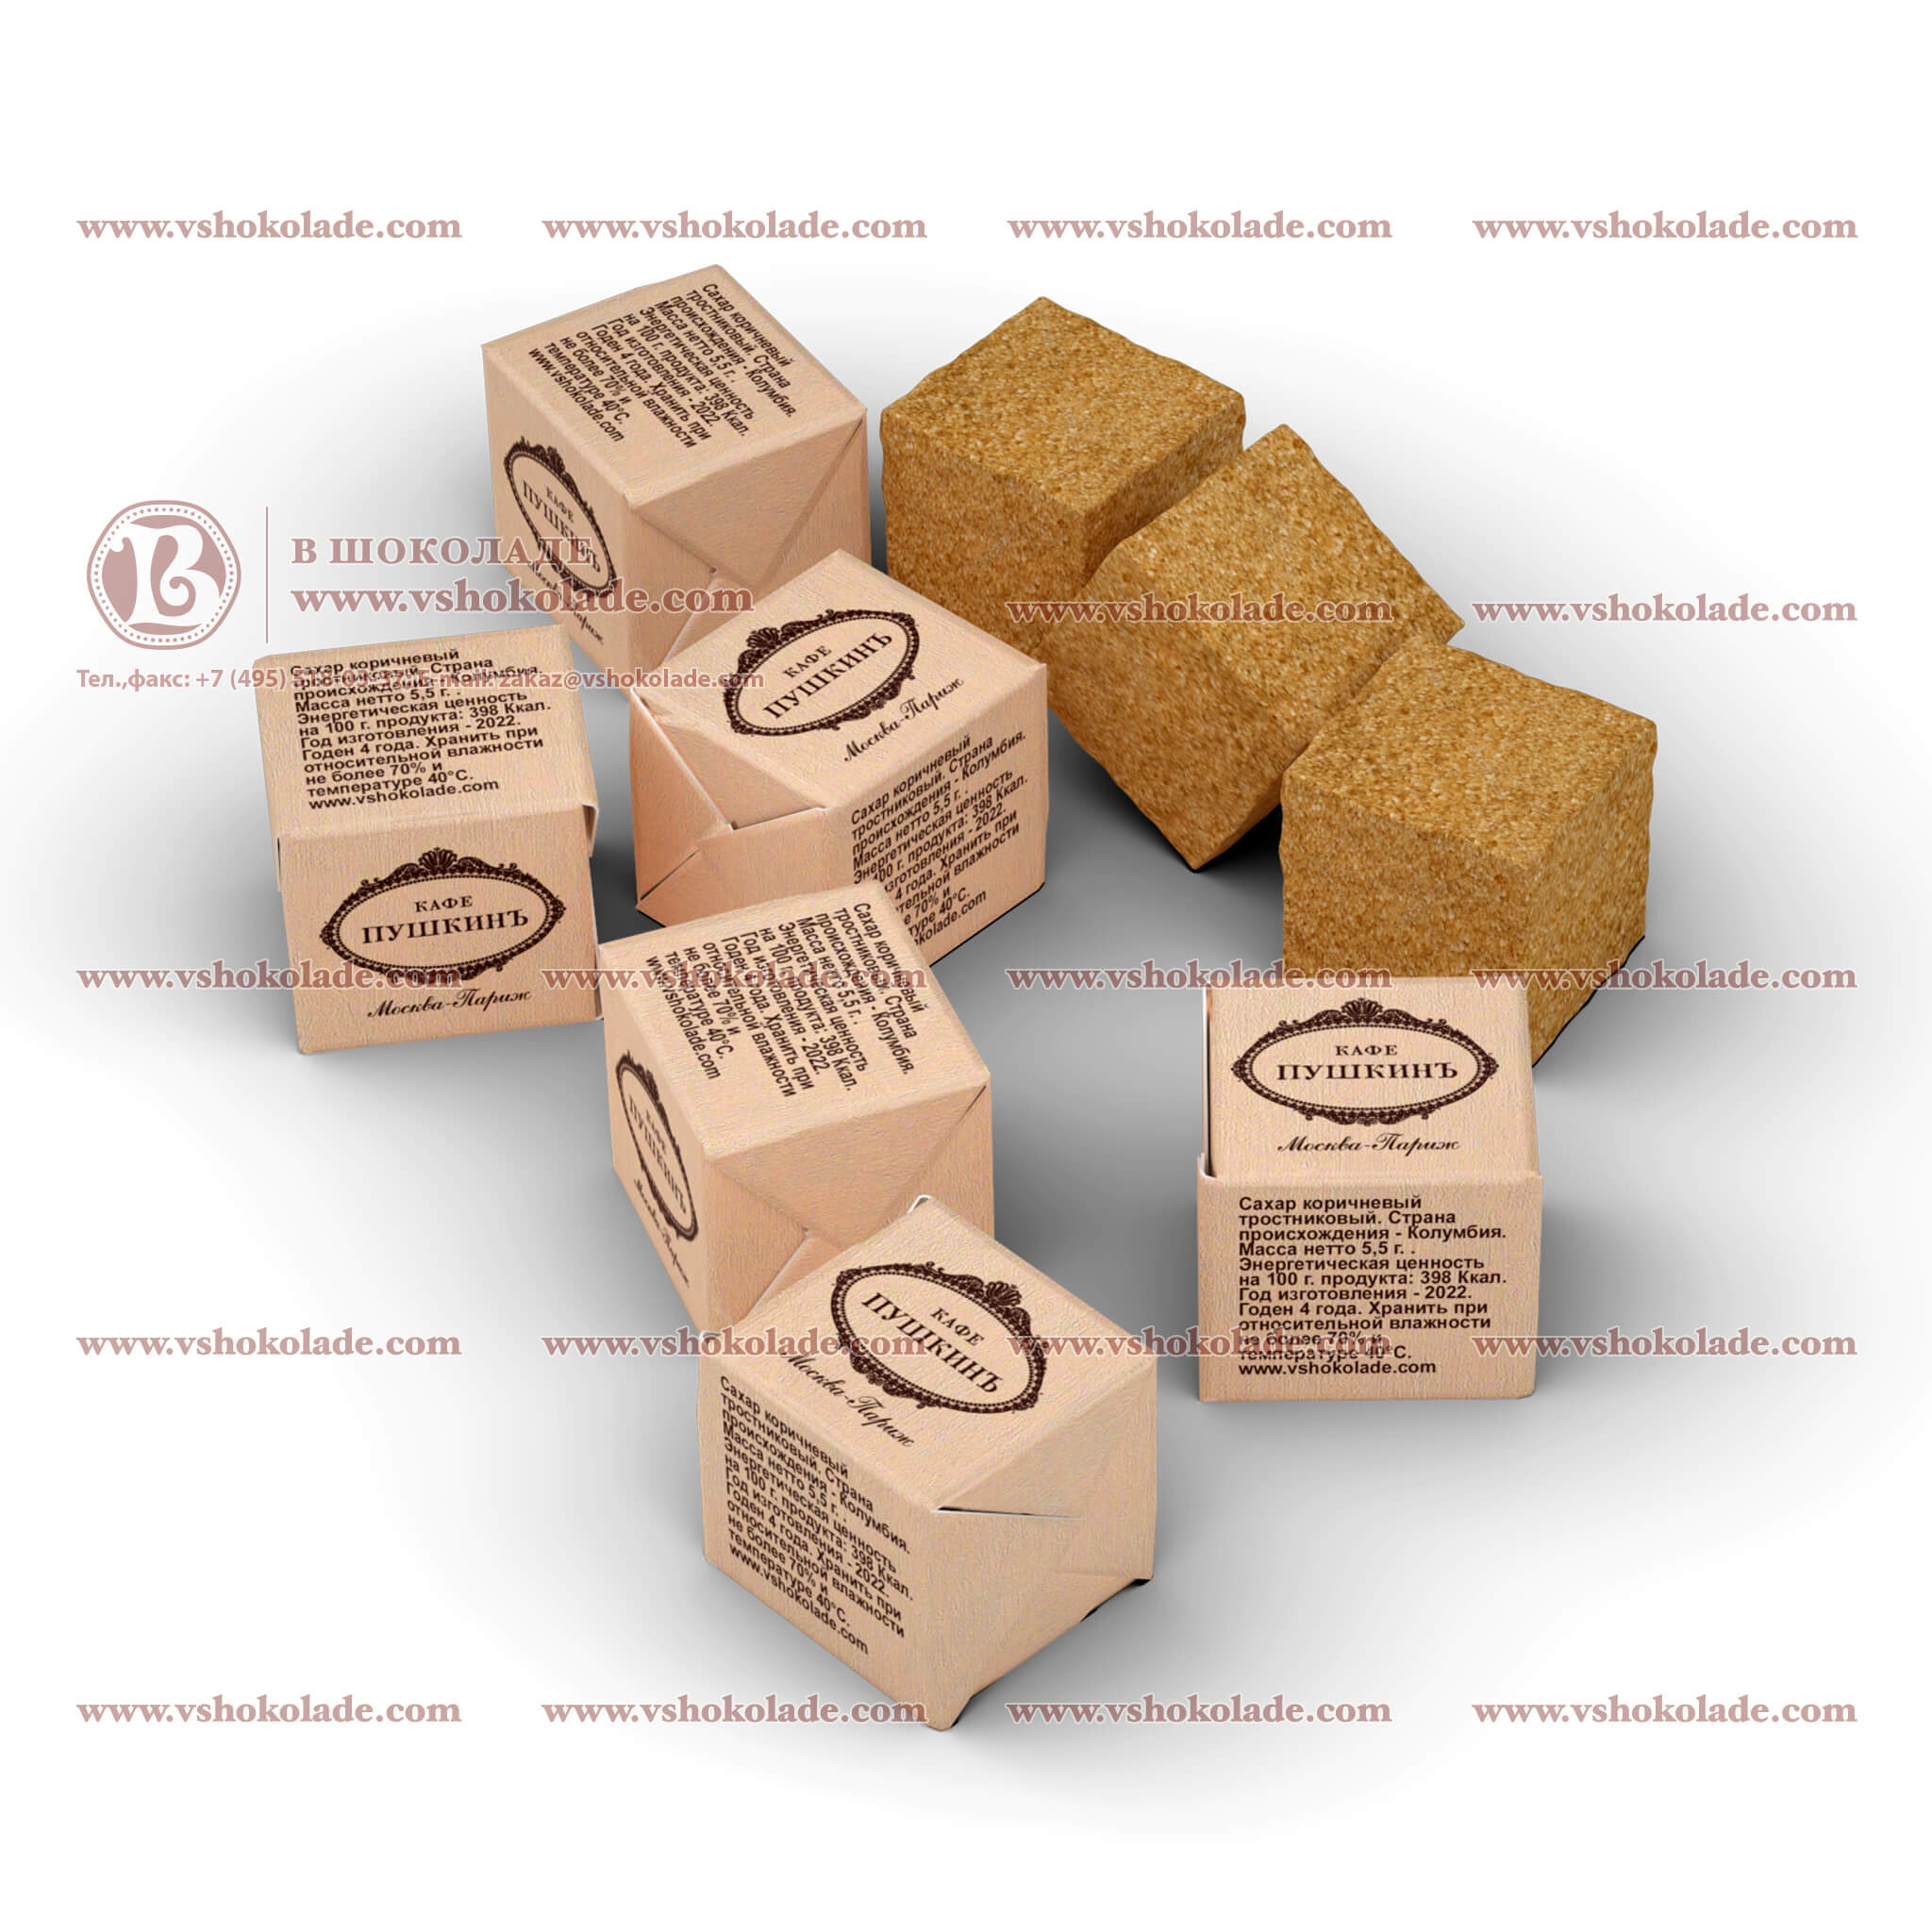 Сахар в формате кубика с логотипом заказчика. Кусковой, упакован в брендированную обертку